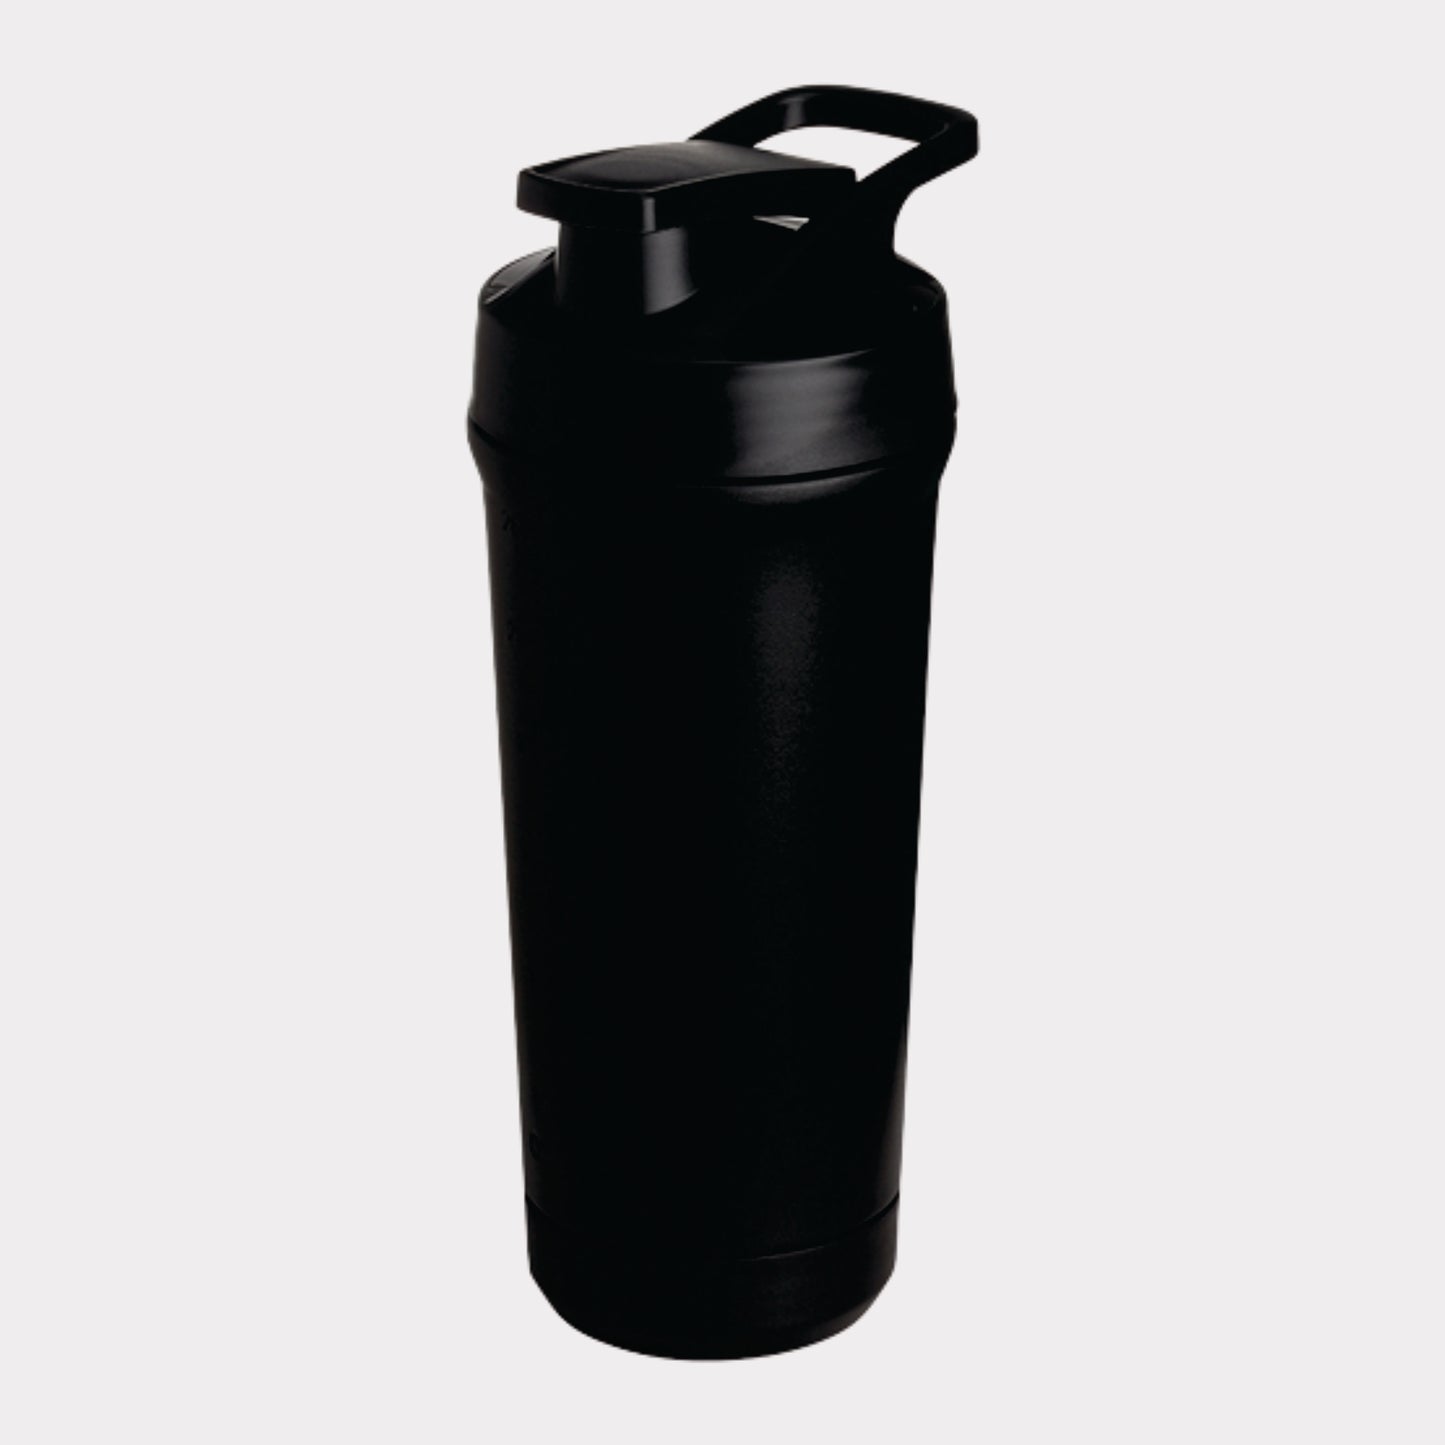 Teemando® Premium Edelstahl Shaker 750ml Kapazität, BPA-frei, auslaufsicherer Deckel, abnehmbarer Shaker-Ball, Füllstandsmarkierung, spülmaschinengeeignet für Proteinshakes, Fitness und Diät, Bodybuilding